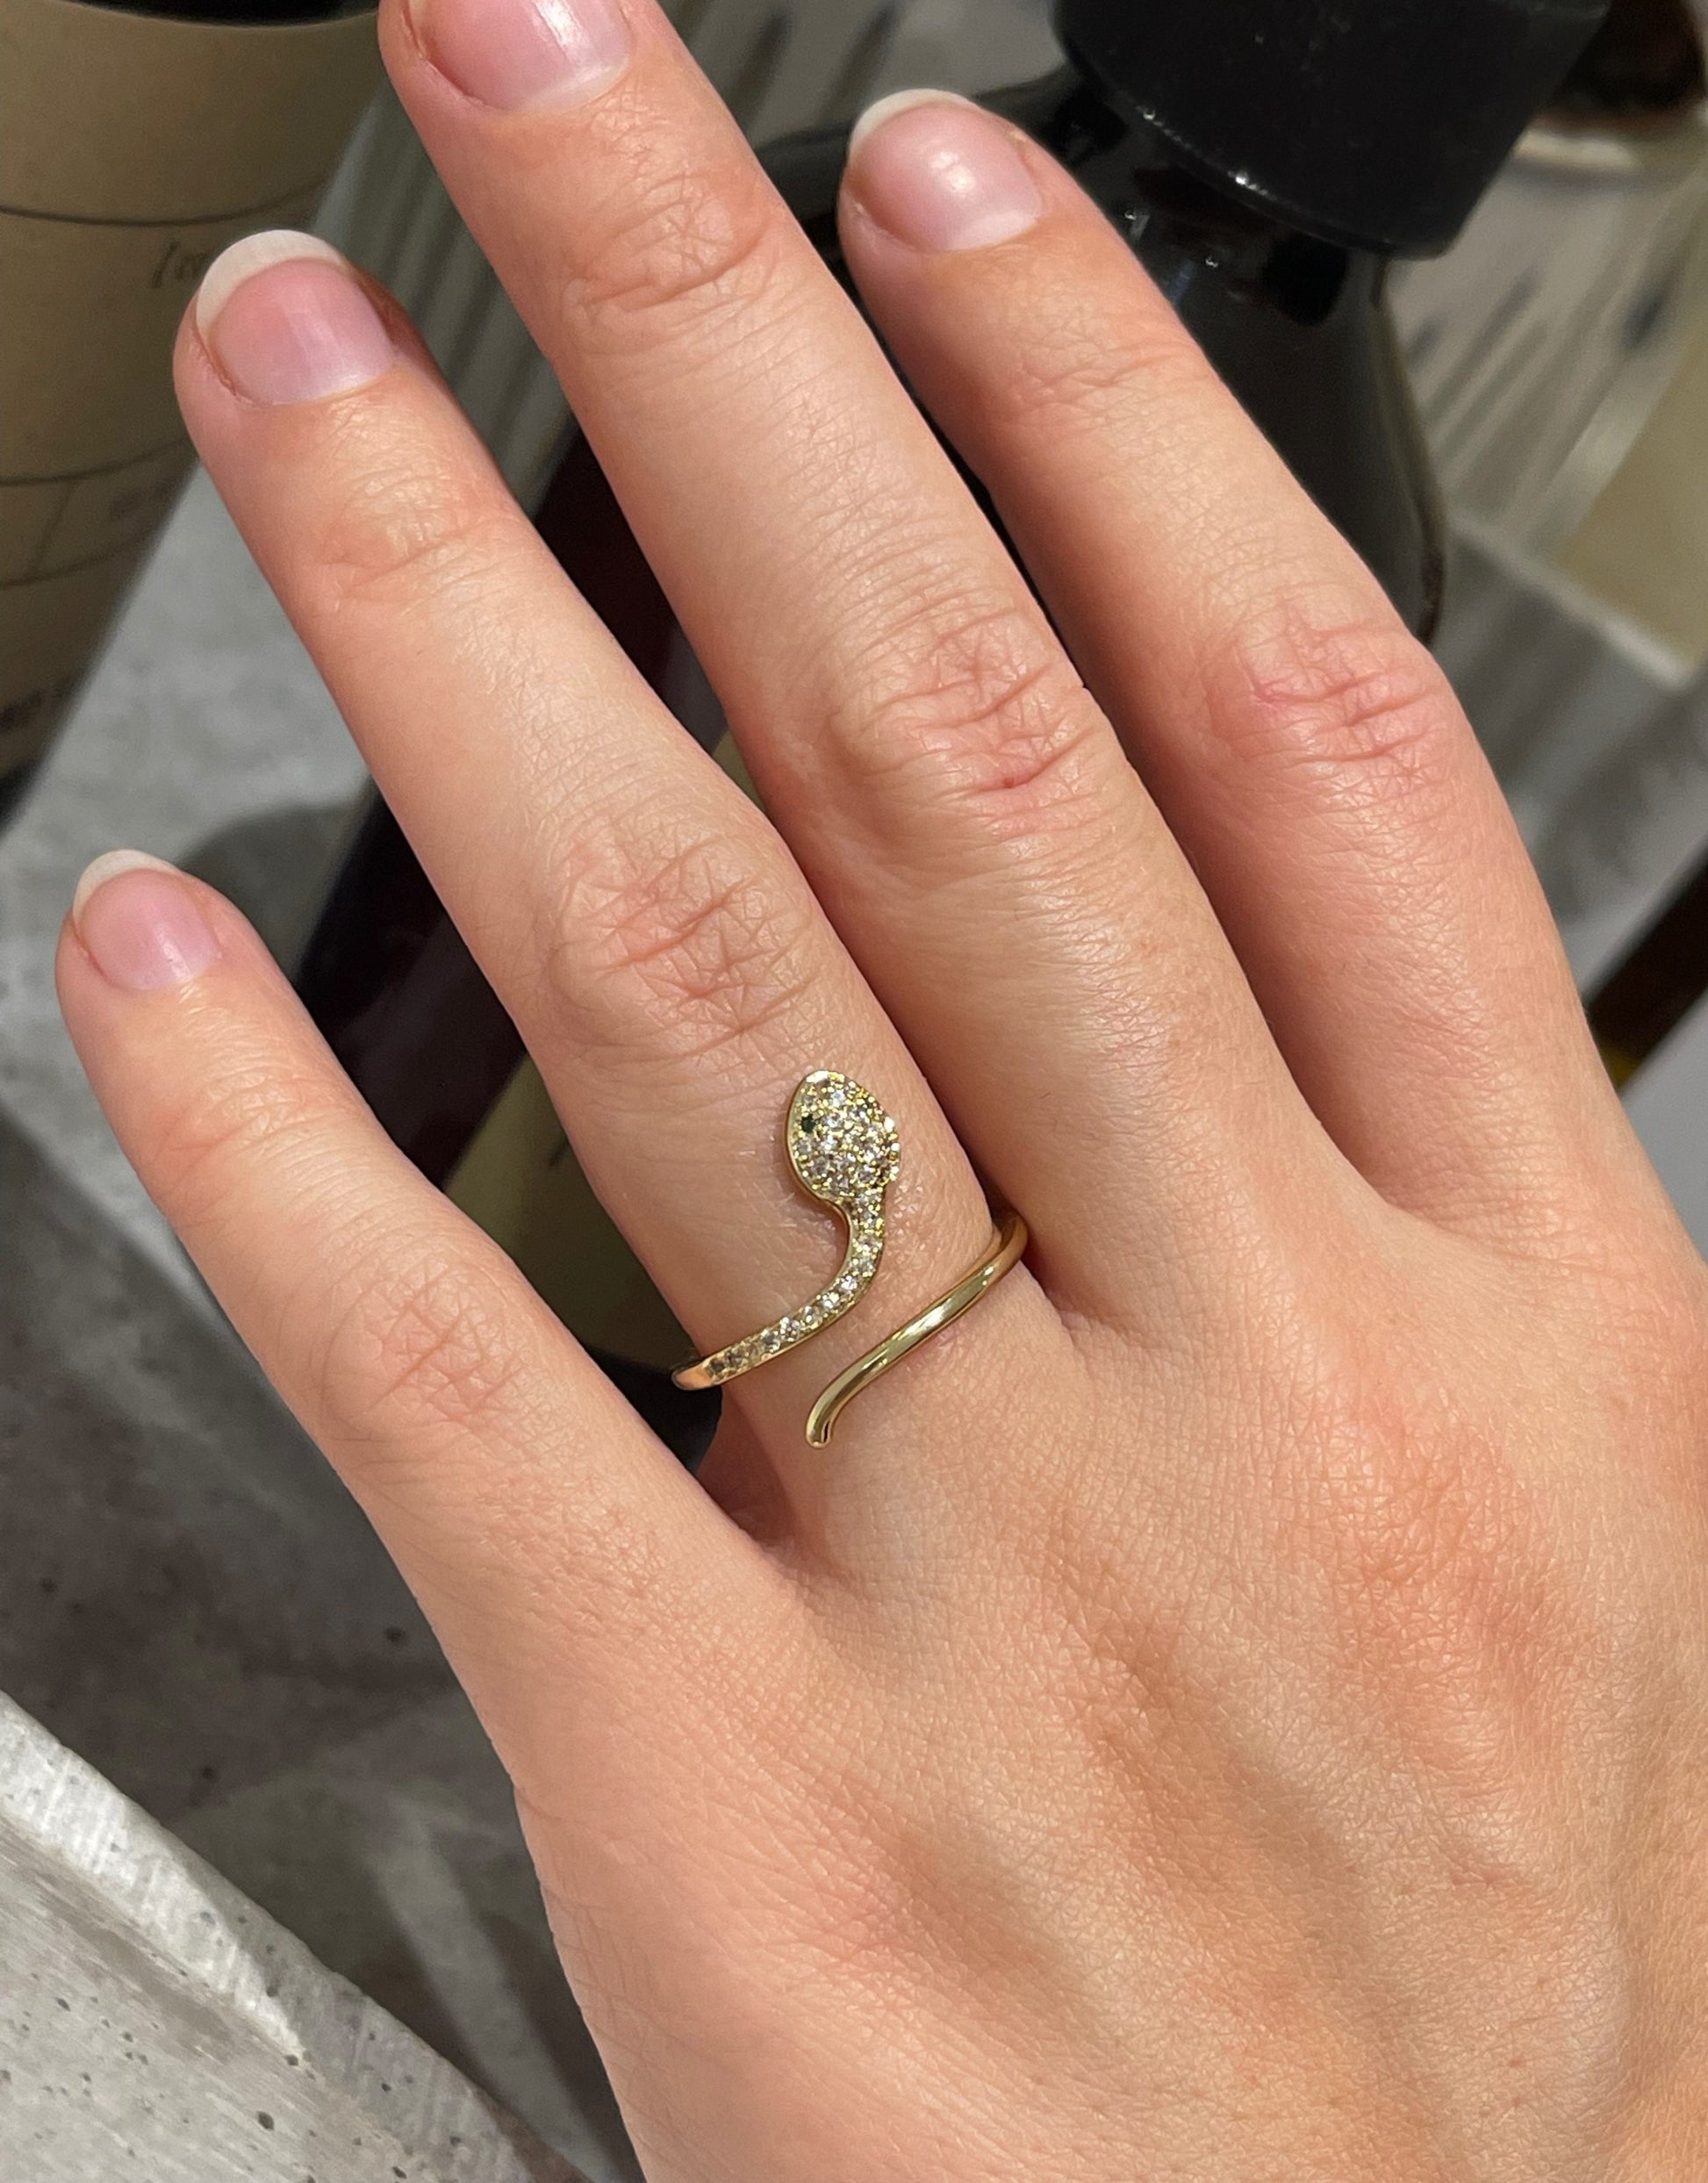 Snakey guld ring med små zircon sten.  Elegant ring i guld formet som en slange, der snor sig om fingeren. Ringen er i et skinnende look med små zircon sten.